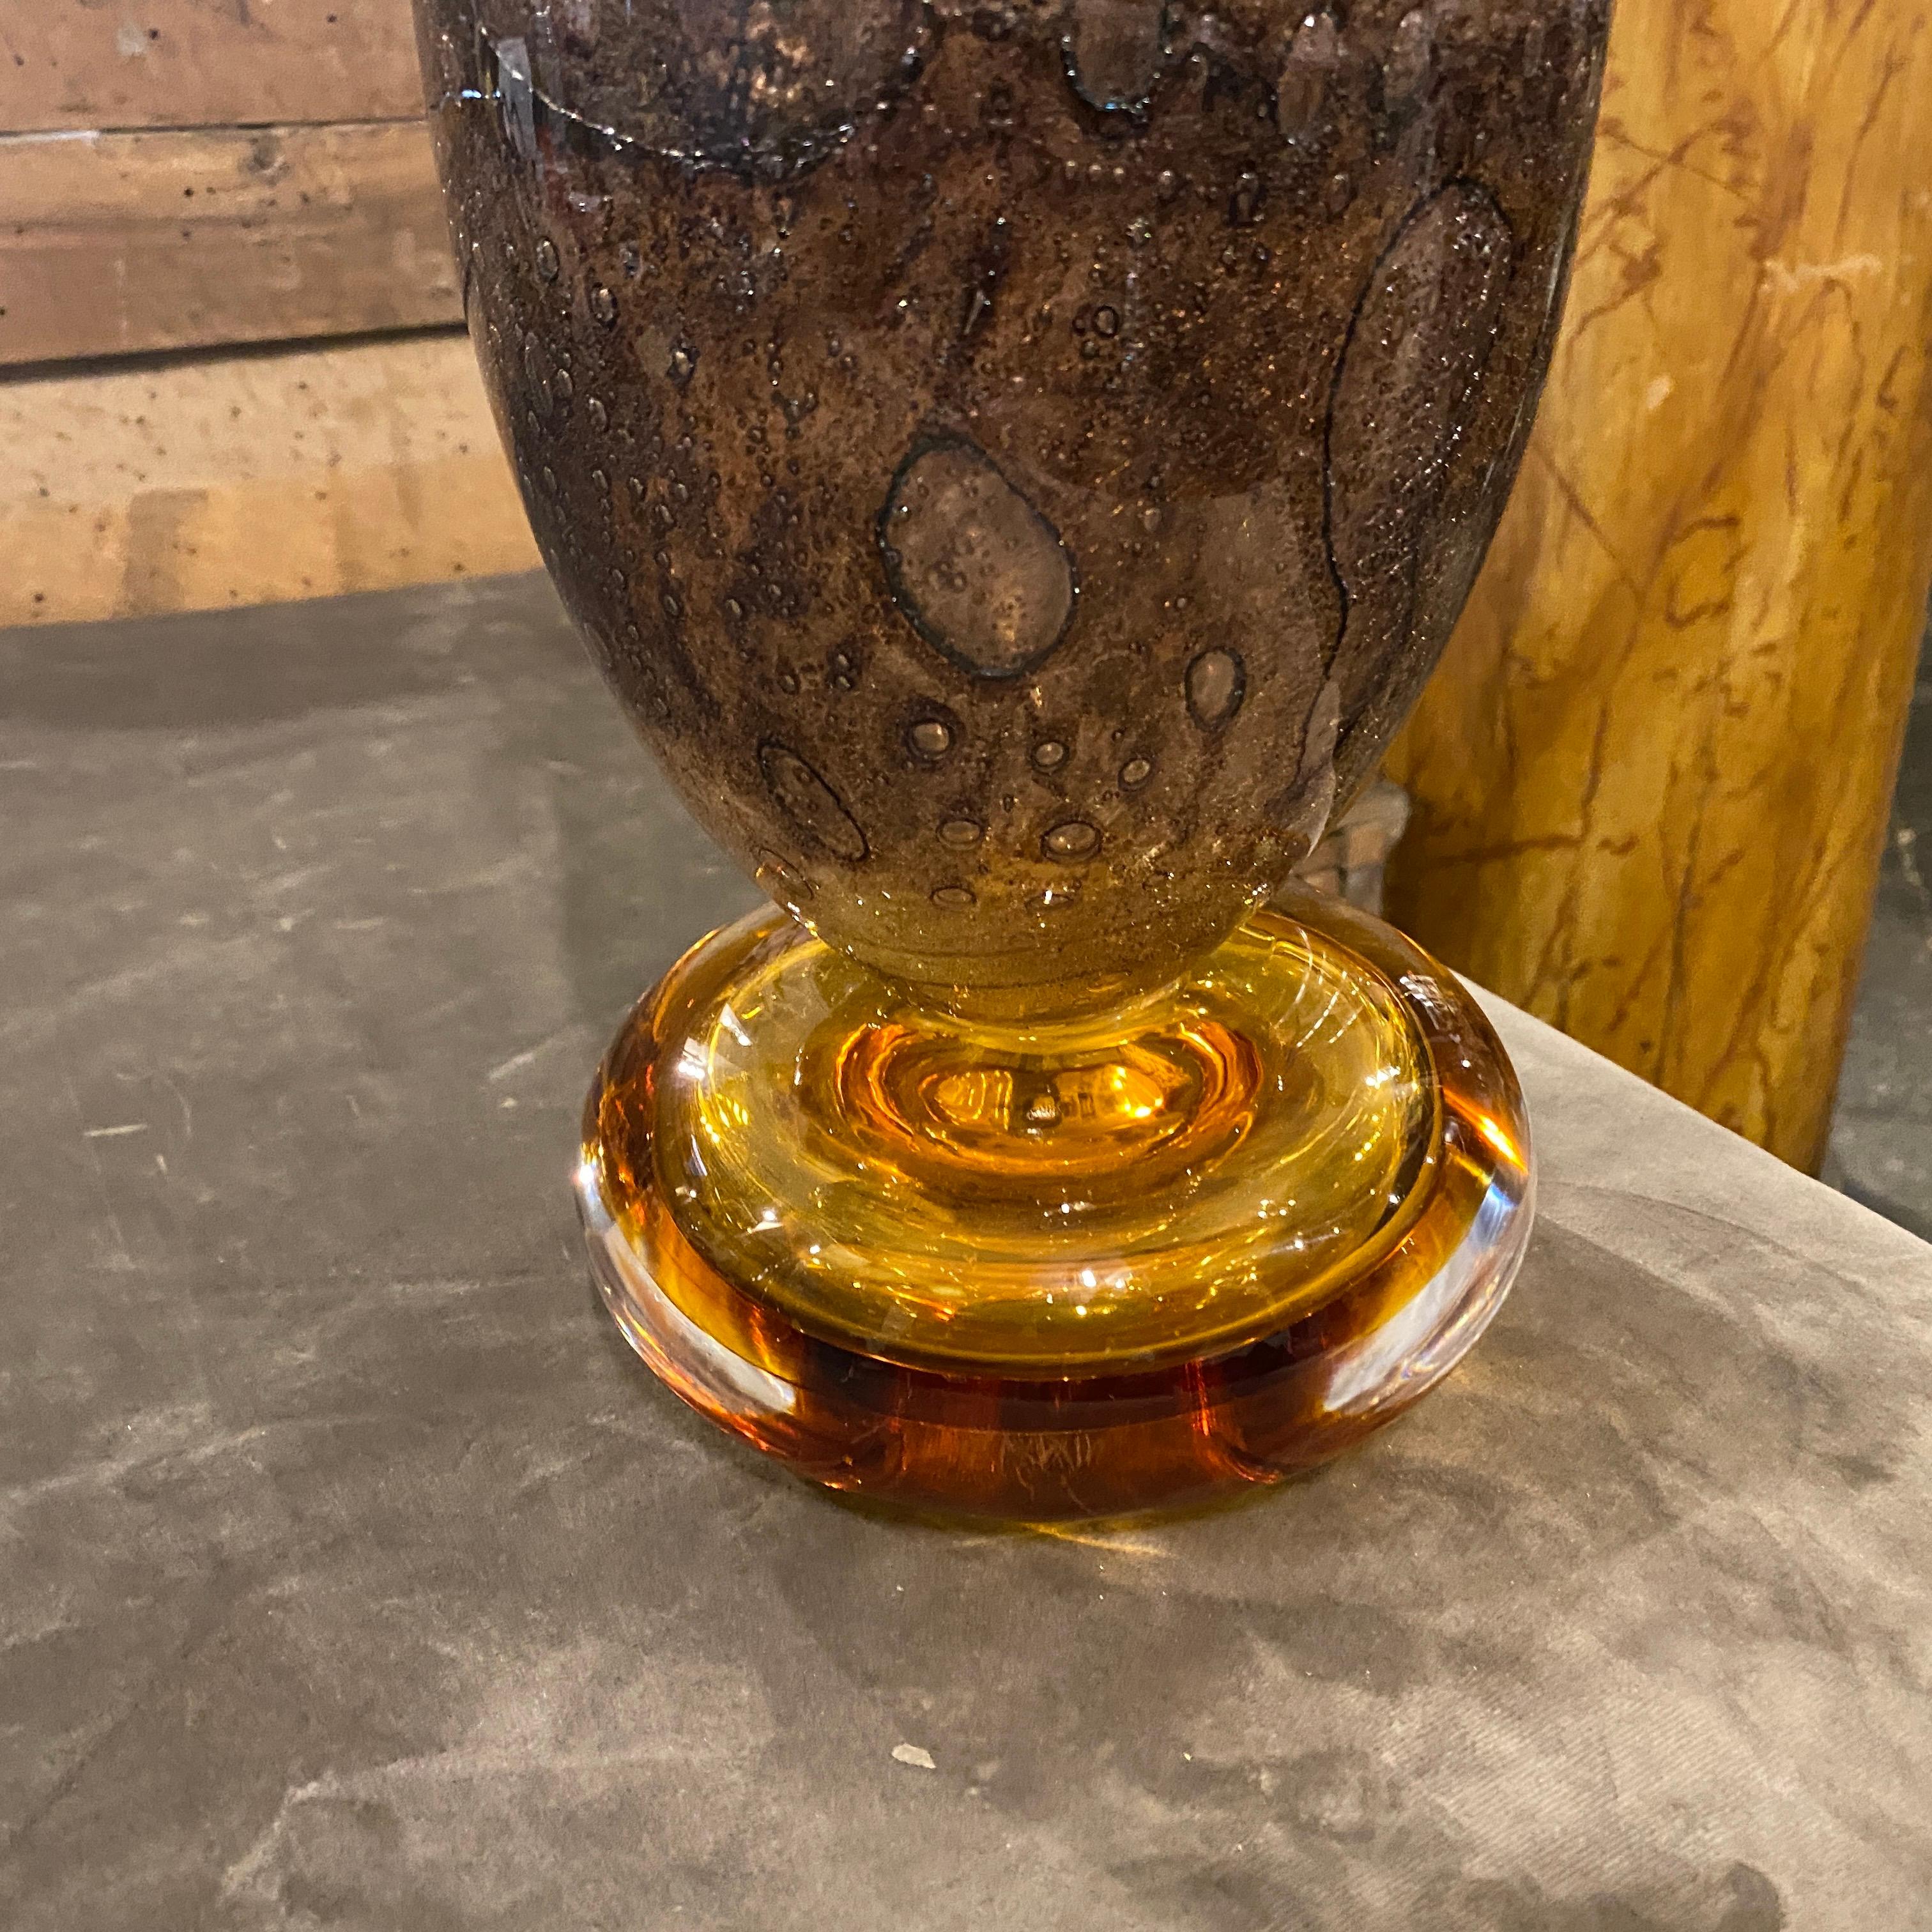 Eine äußerst seltene Vase, entworfen und hergestellt in Murano von Giovanni Cenedese. Seine Säure signiert auf einer Seite, braun und bernsteinfarbenen Blase Murano-Glas  es ist in sehr gutem Zustand. Die Vase ist ein eindrucksvolles Beispiel für